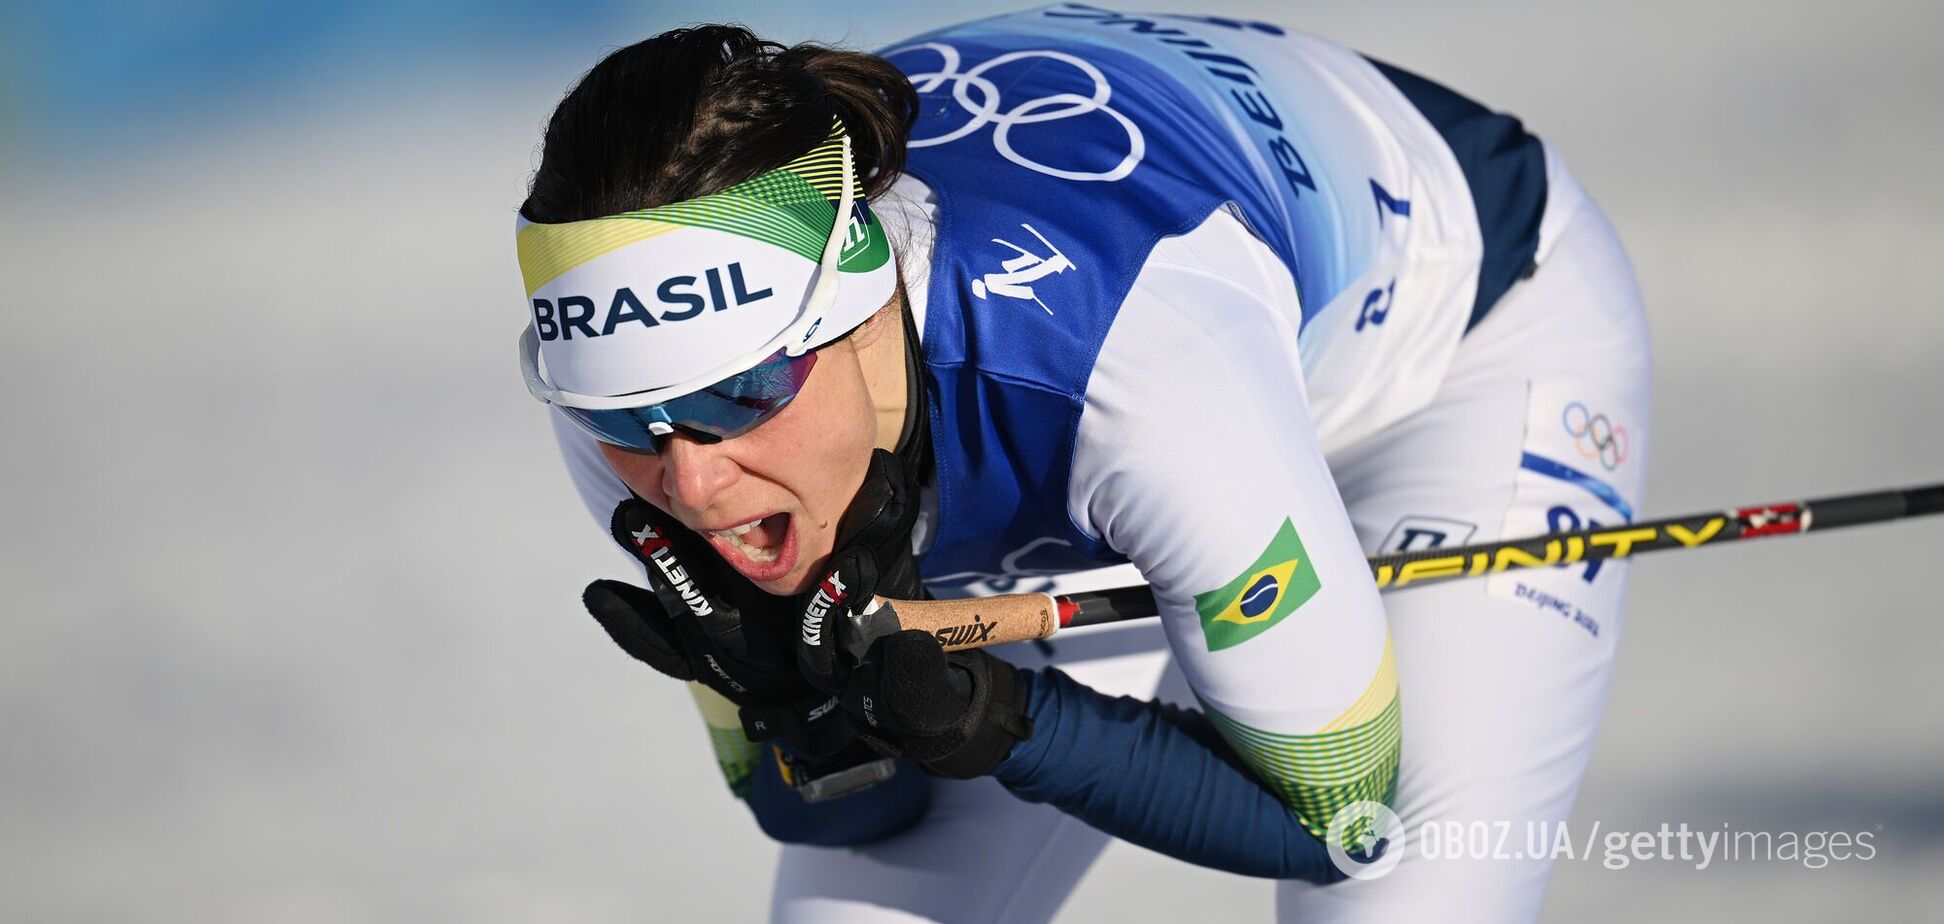 Лыжница из Бразилии установила уникальный рекорд на Олимпиде-2022